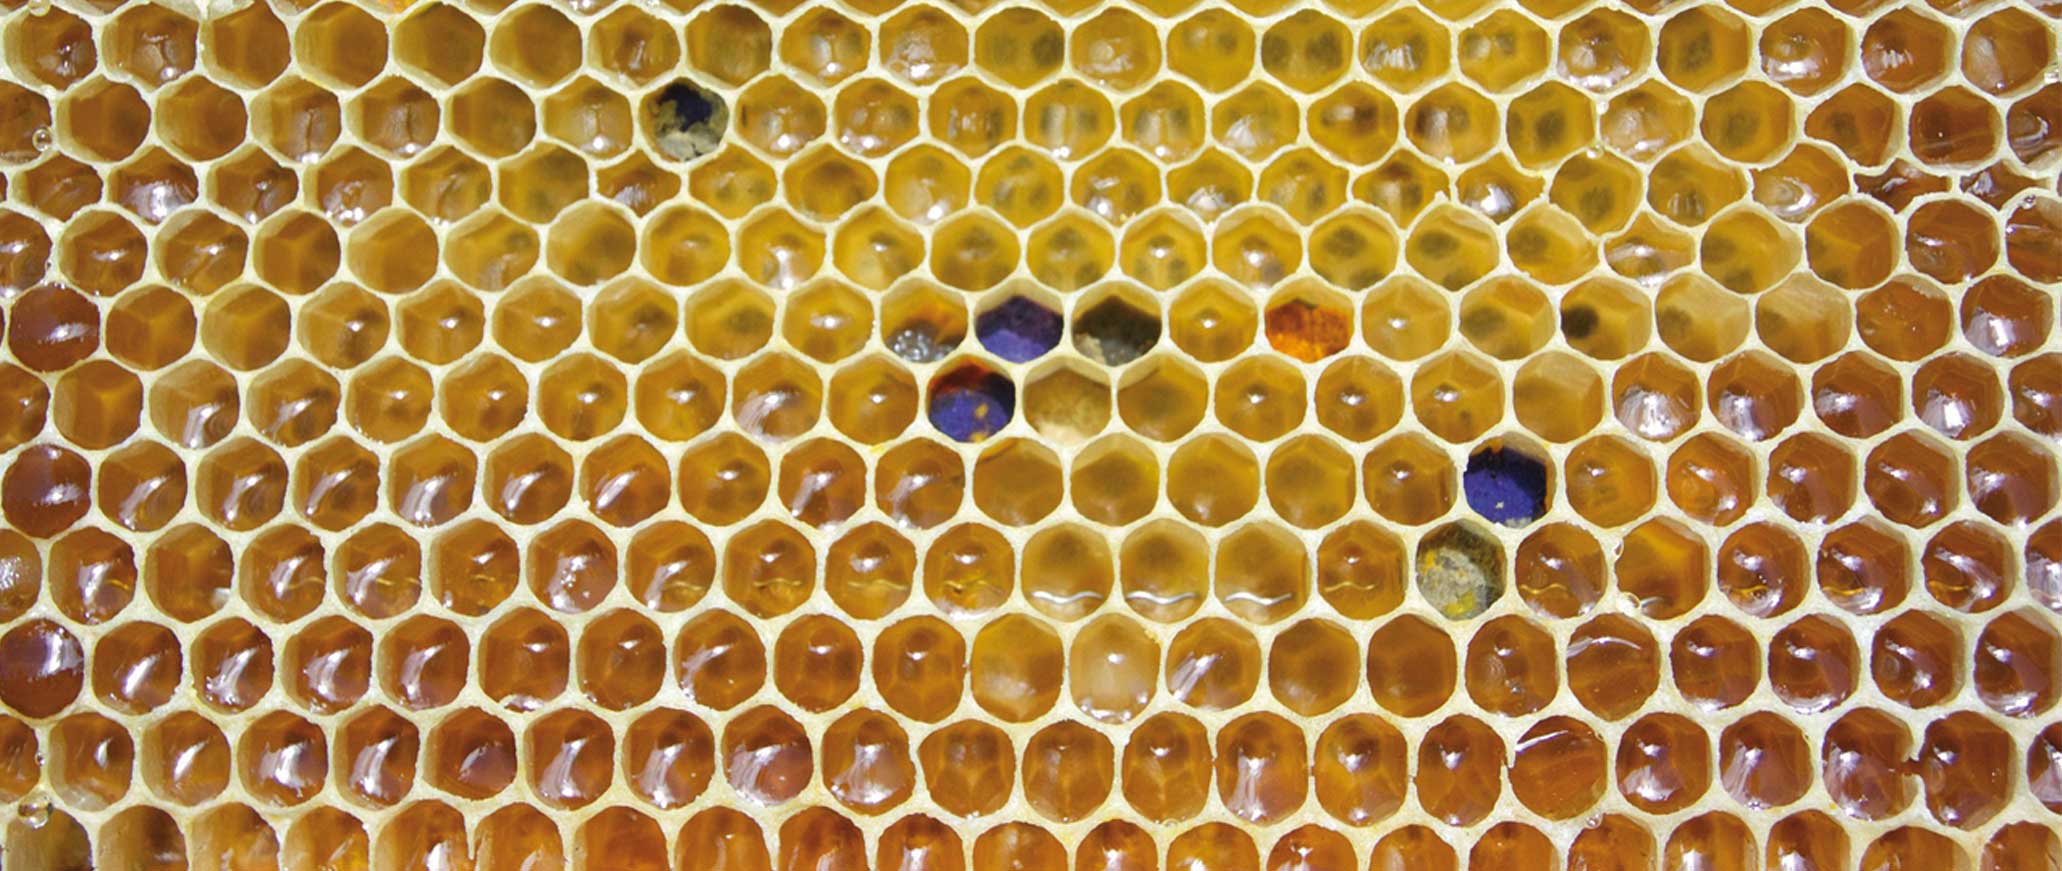 ≫ ¿Por qué la cera de abejas no es un emulsionante?